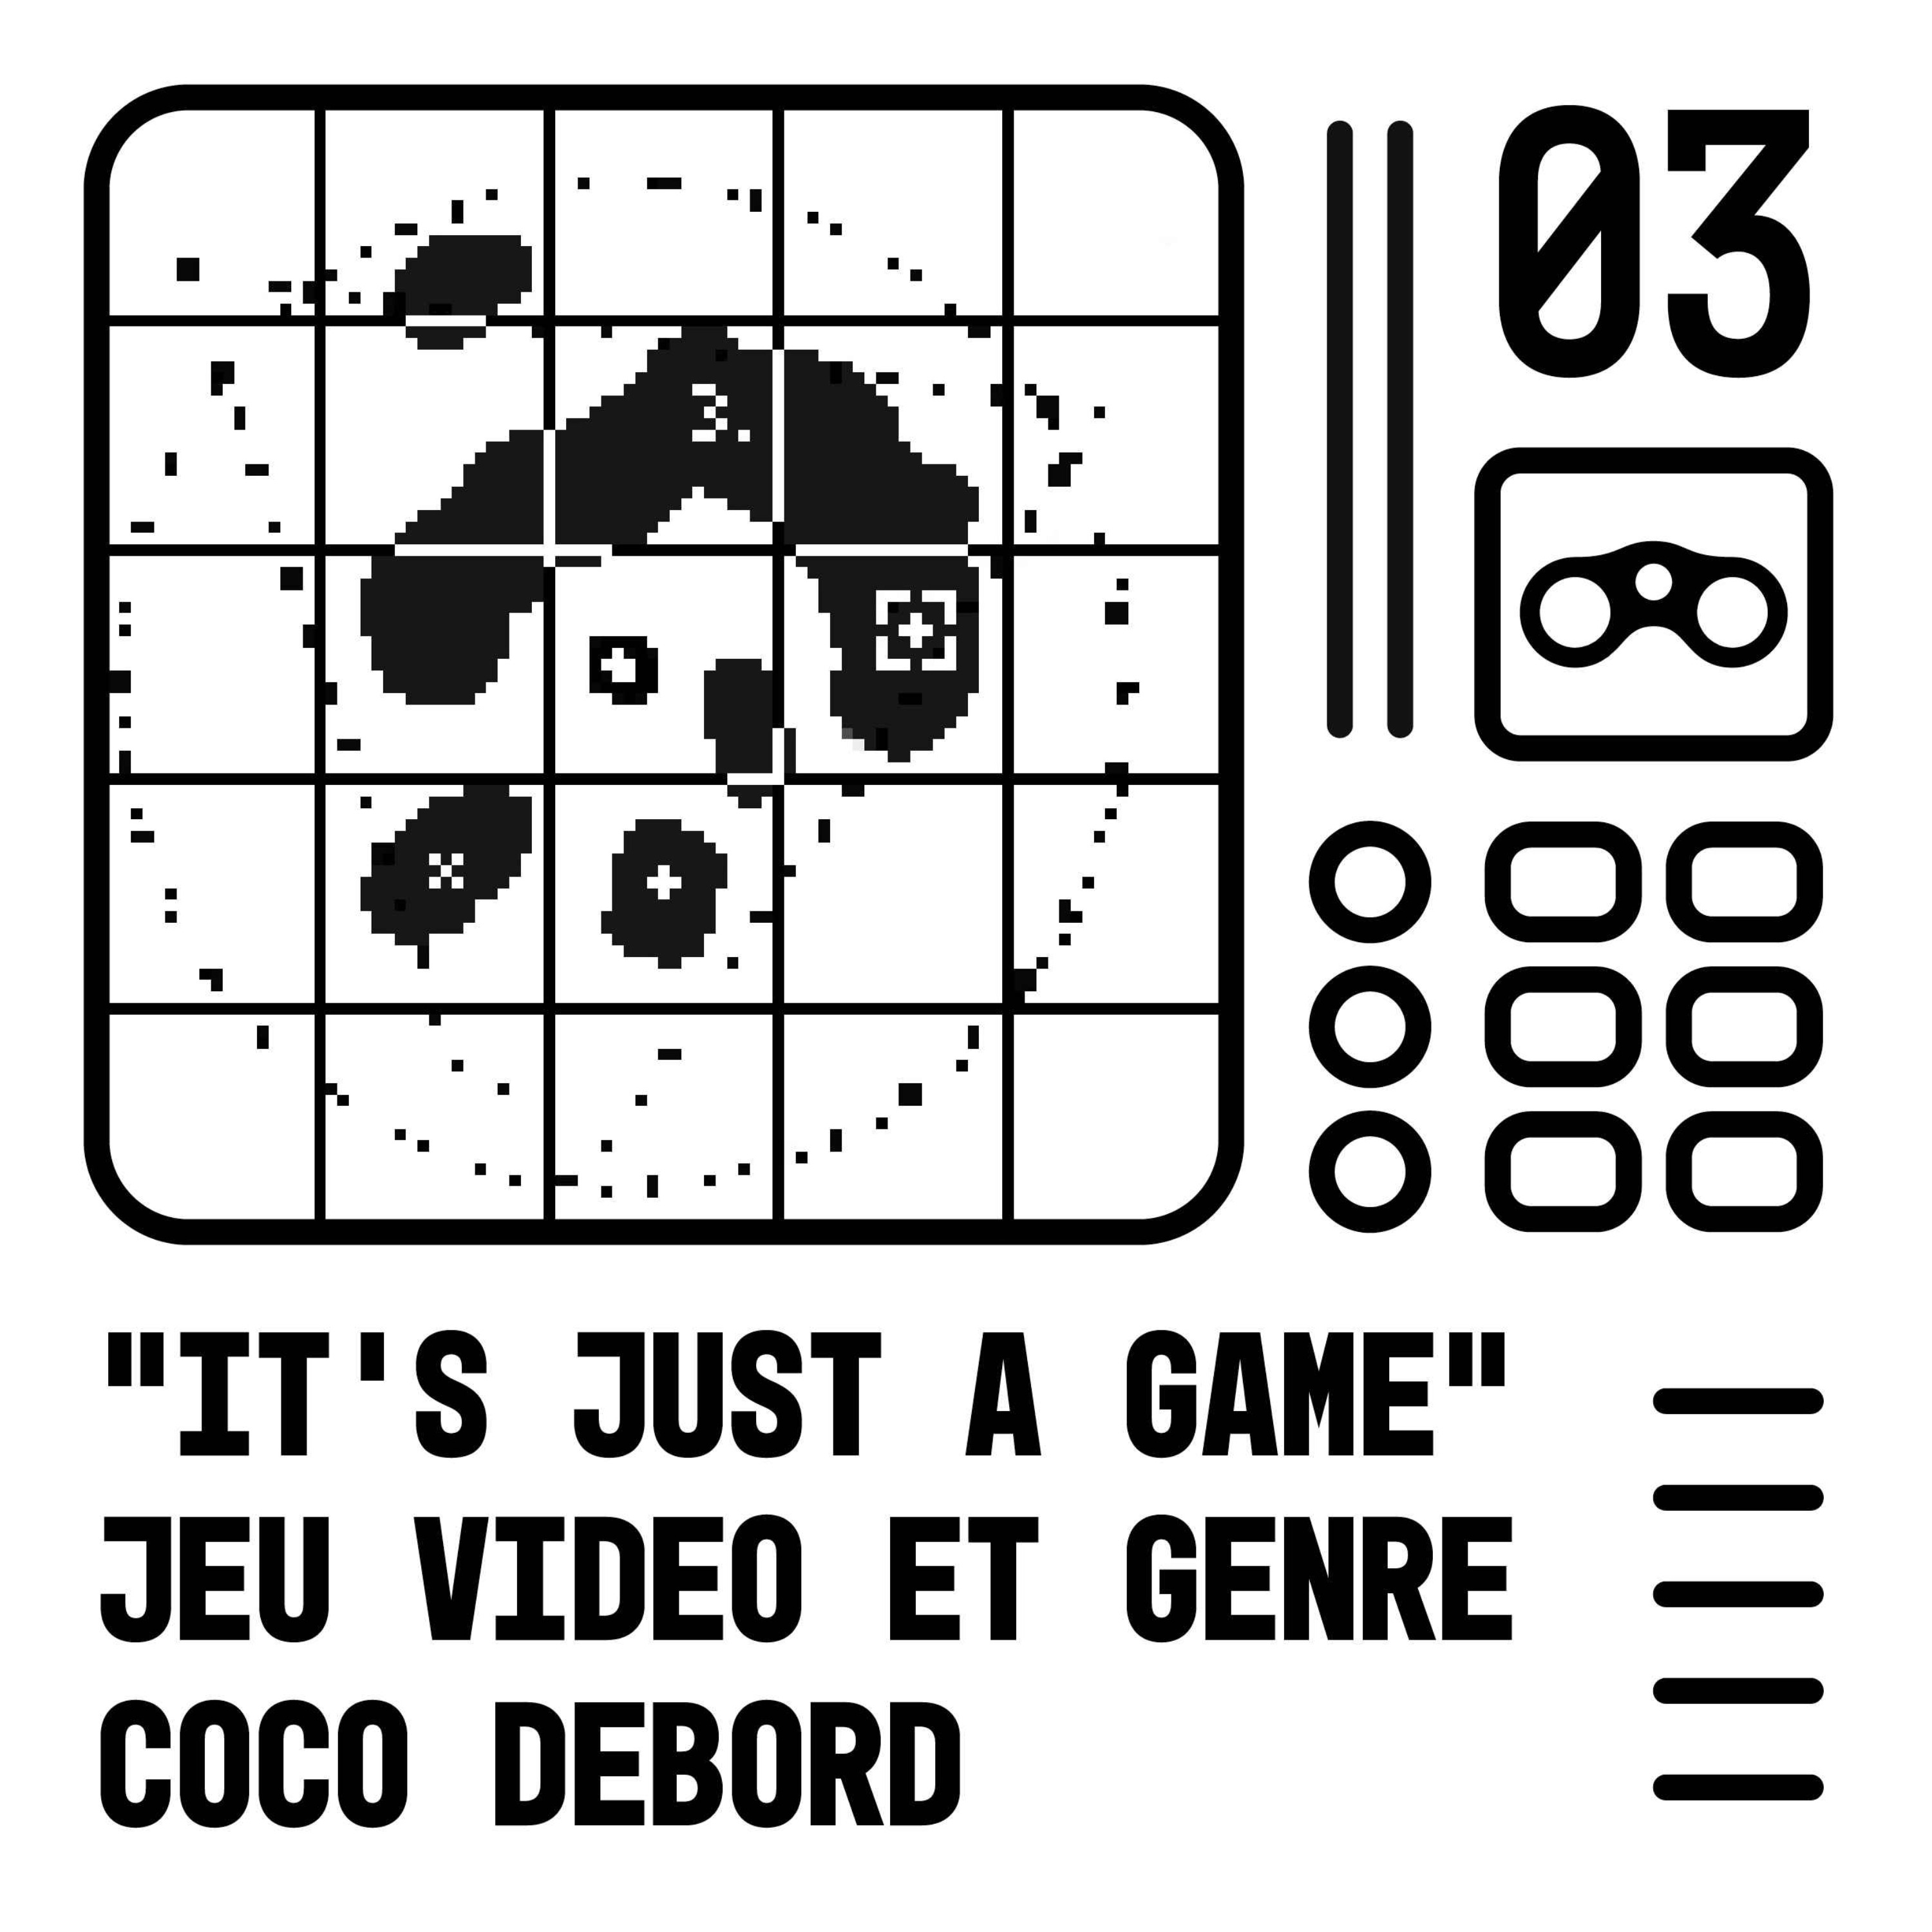 cover art for "It's just a game" jeu vidéo et genre - Coco Debord